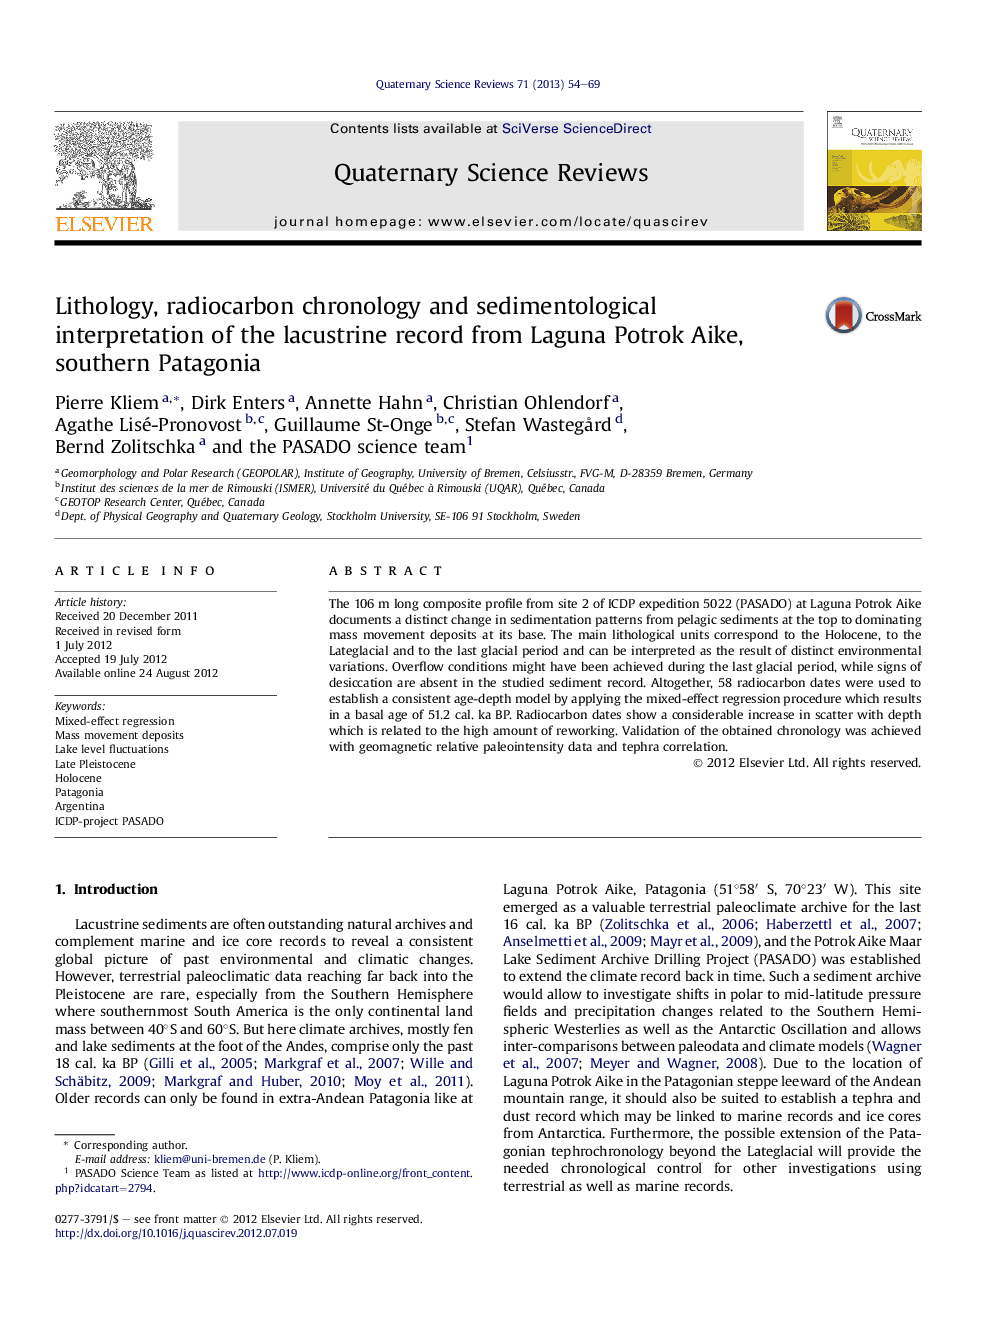 سنگ شناسی، کرونولوژی رادیو کربن و تفسیر رسوب شناختی رکورد لواژی از لگونا پاتروک آیکو، جنوب پاتاگونیا 